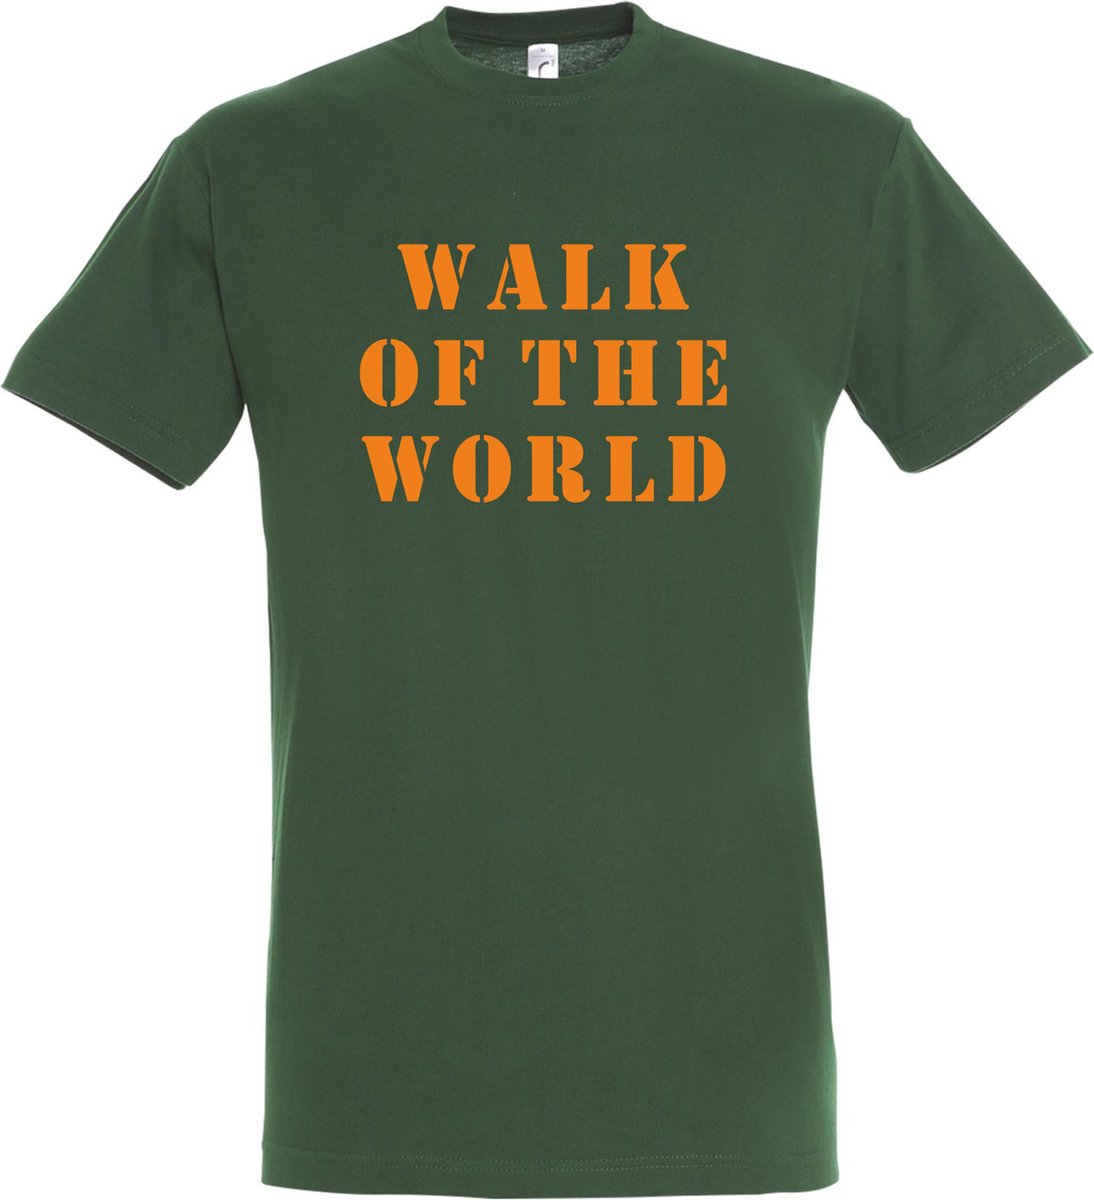 T-shirt Walk of the world |Wandelvierdaagse | vierdaagse Nijmegen | Roze woensdag | Groen | maat M